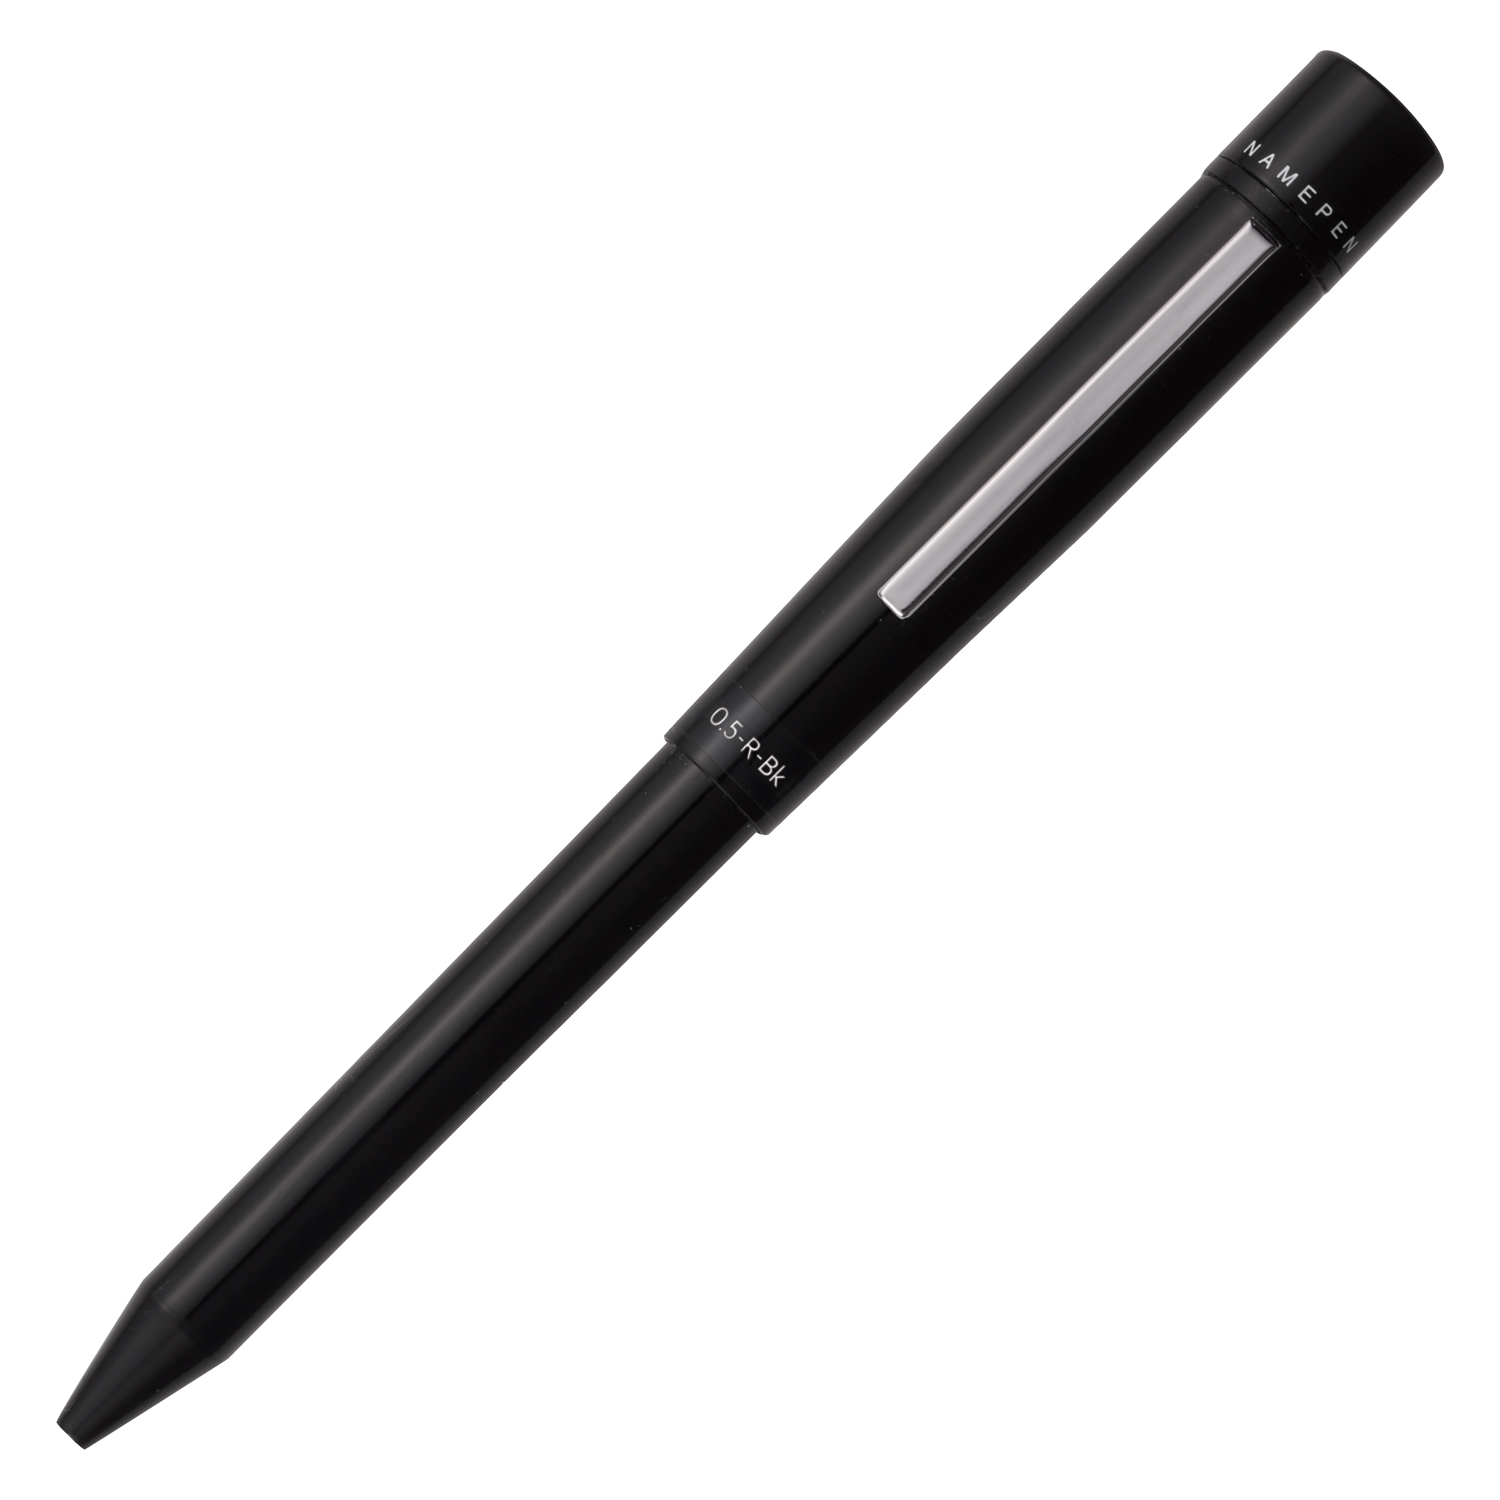 ネームペン ログノ ブラック ネーム印別製|TKS-LN2|商品カタログ 